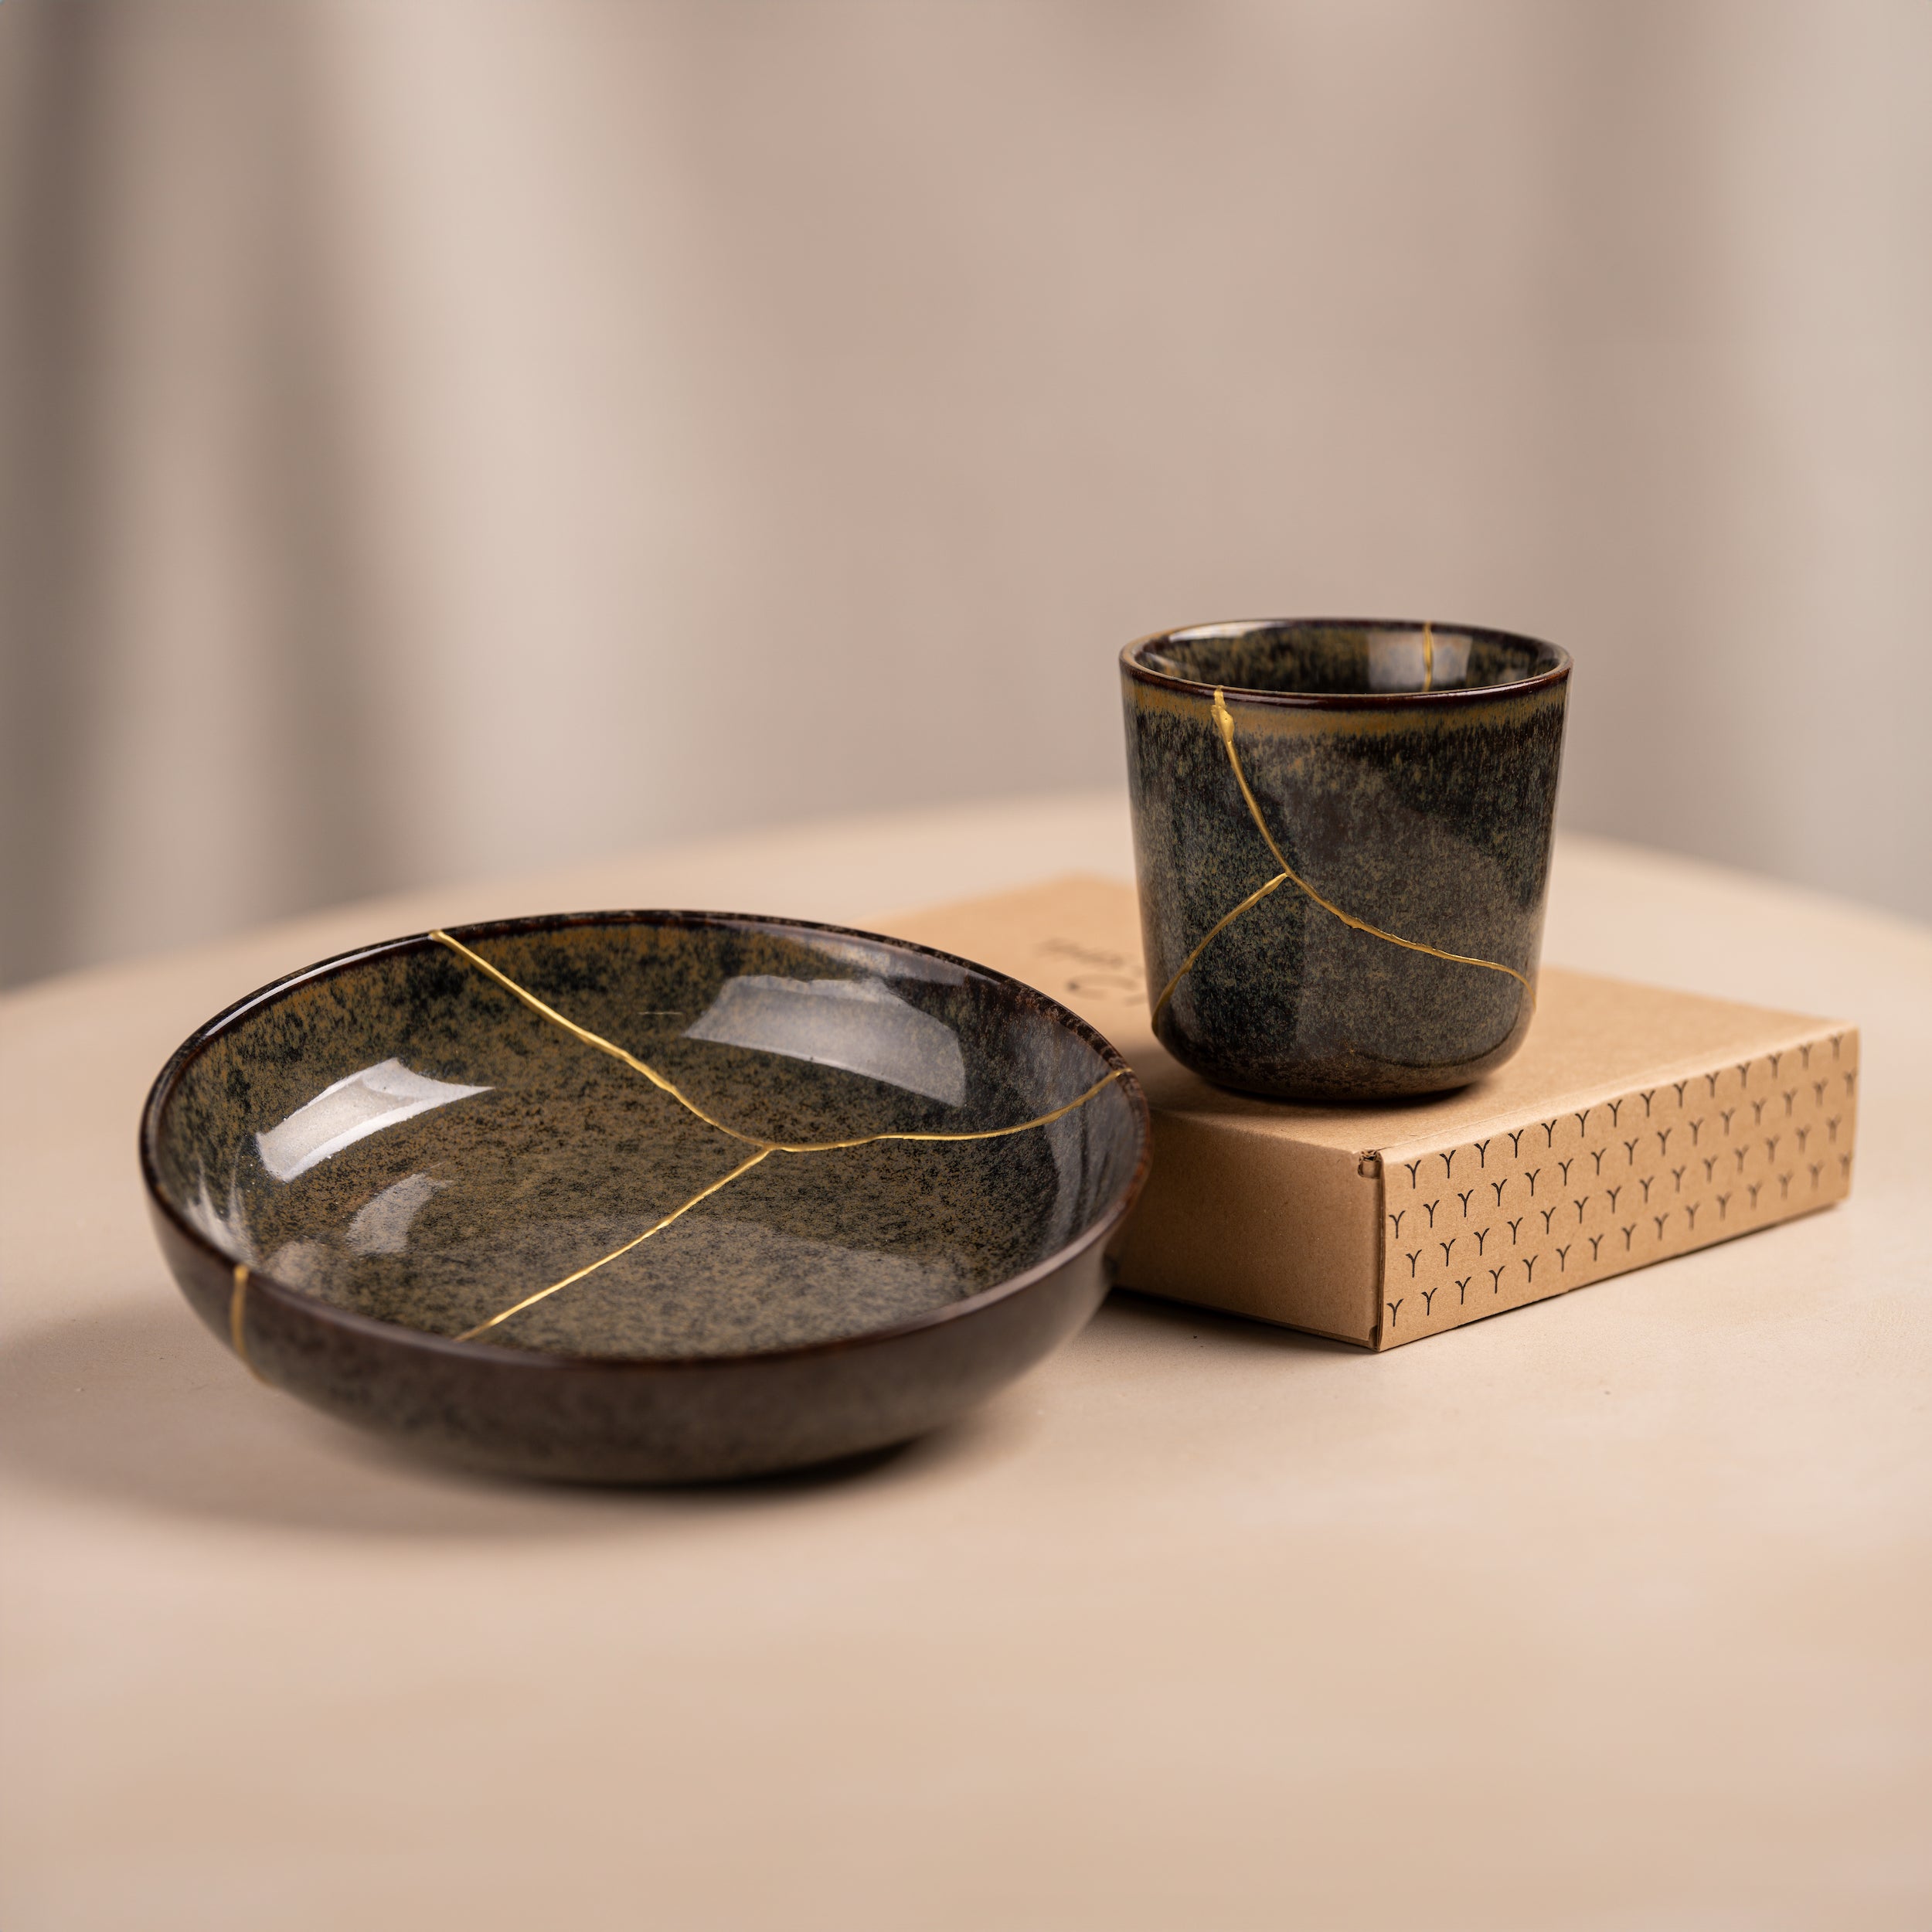 DIY Kintsugi Ceramic Repair Kit – mendedwithgold